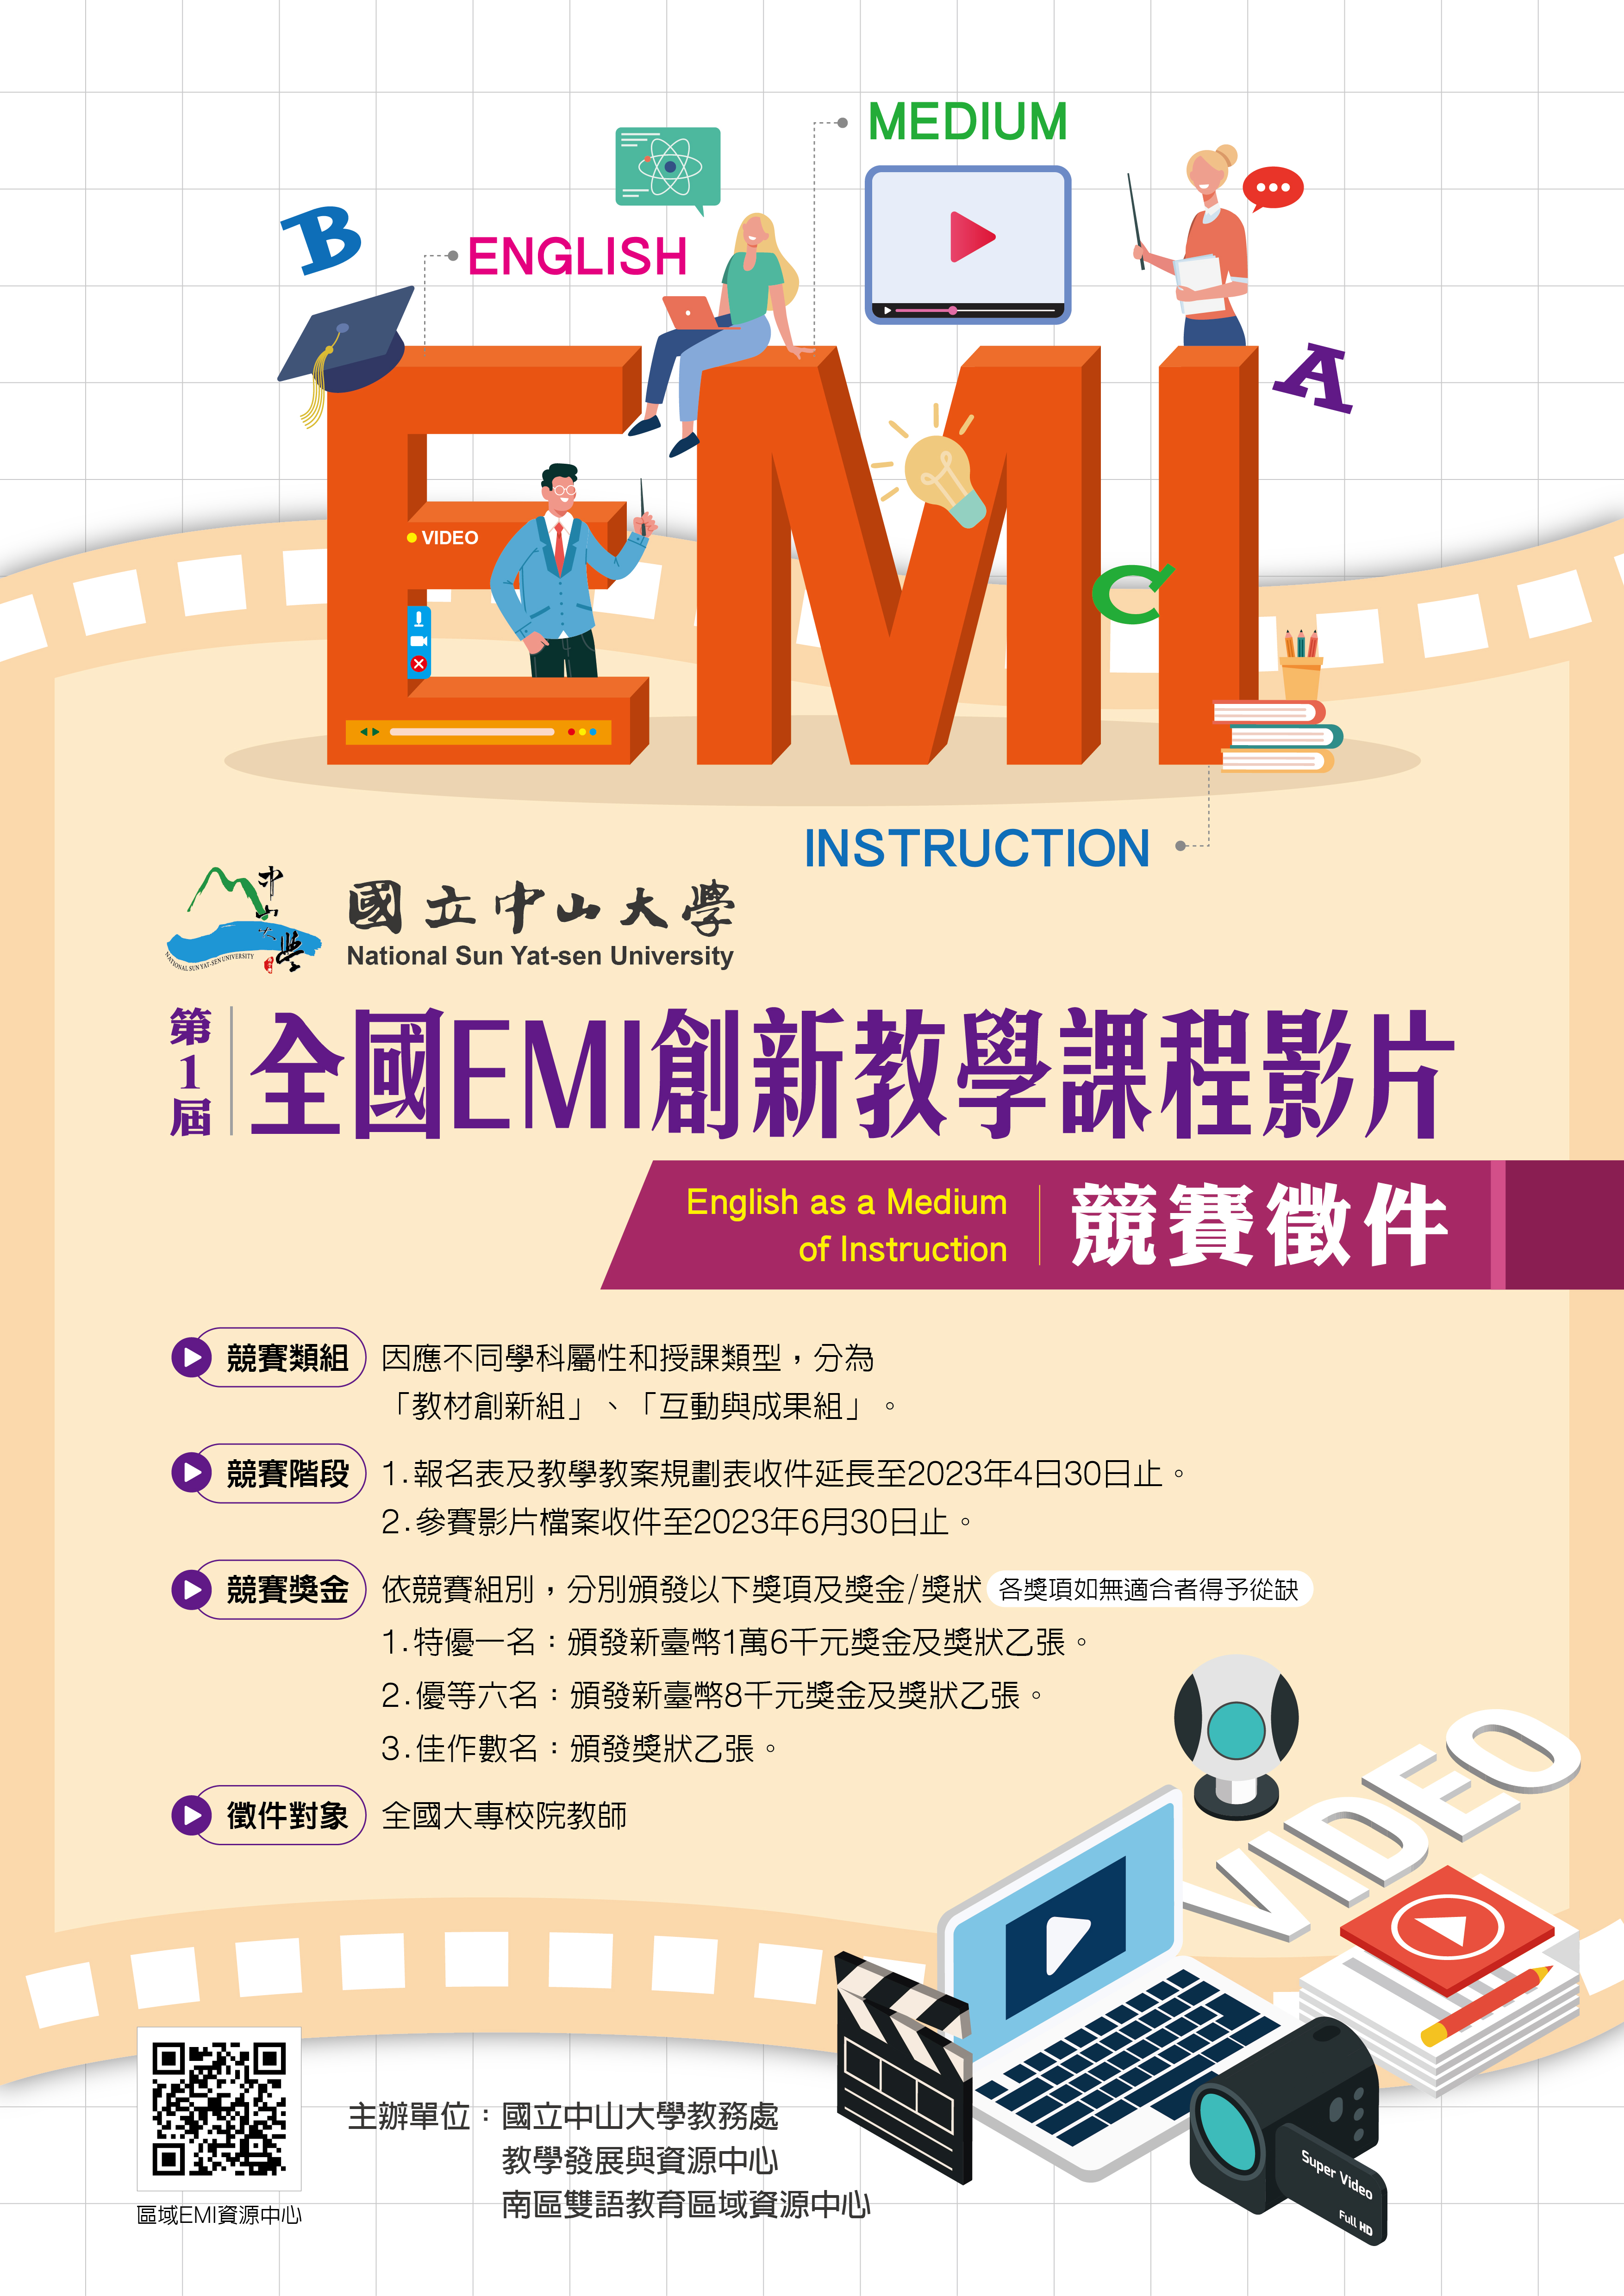 國立中山大學第一屆全國EMI創新教學課程影片競賽